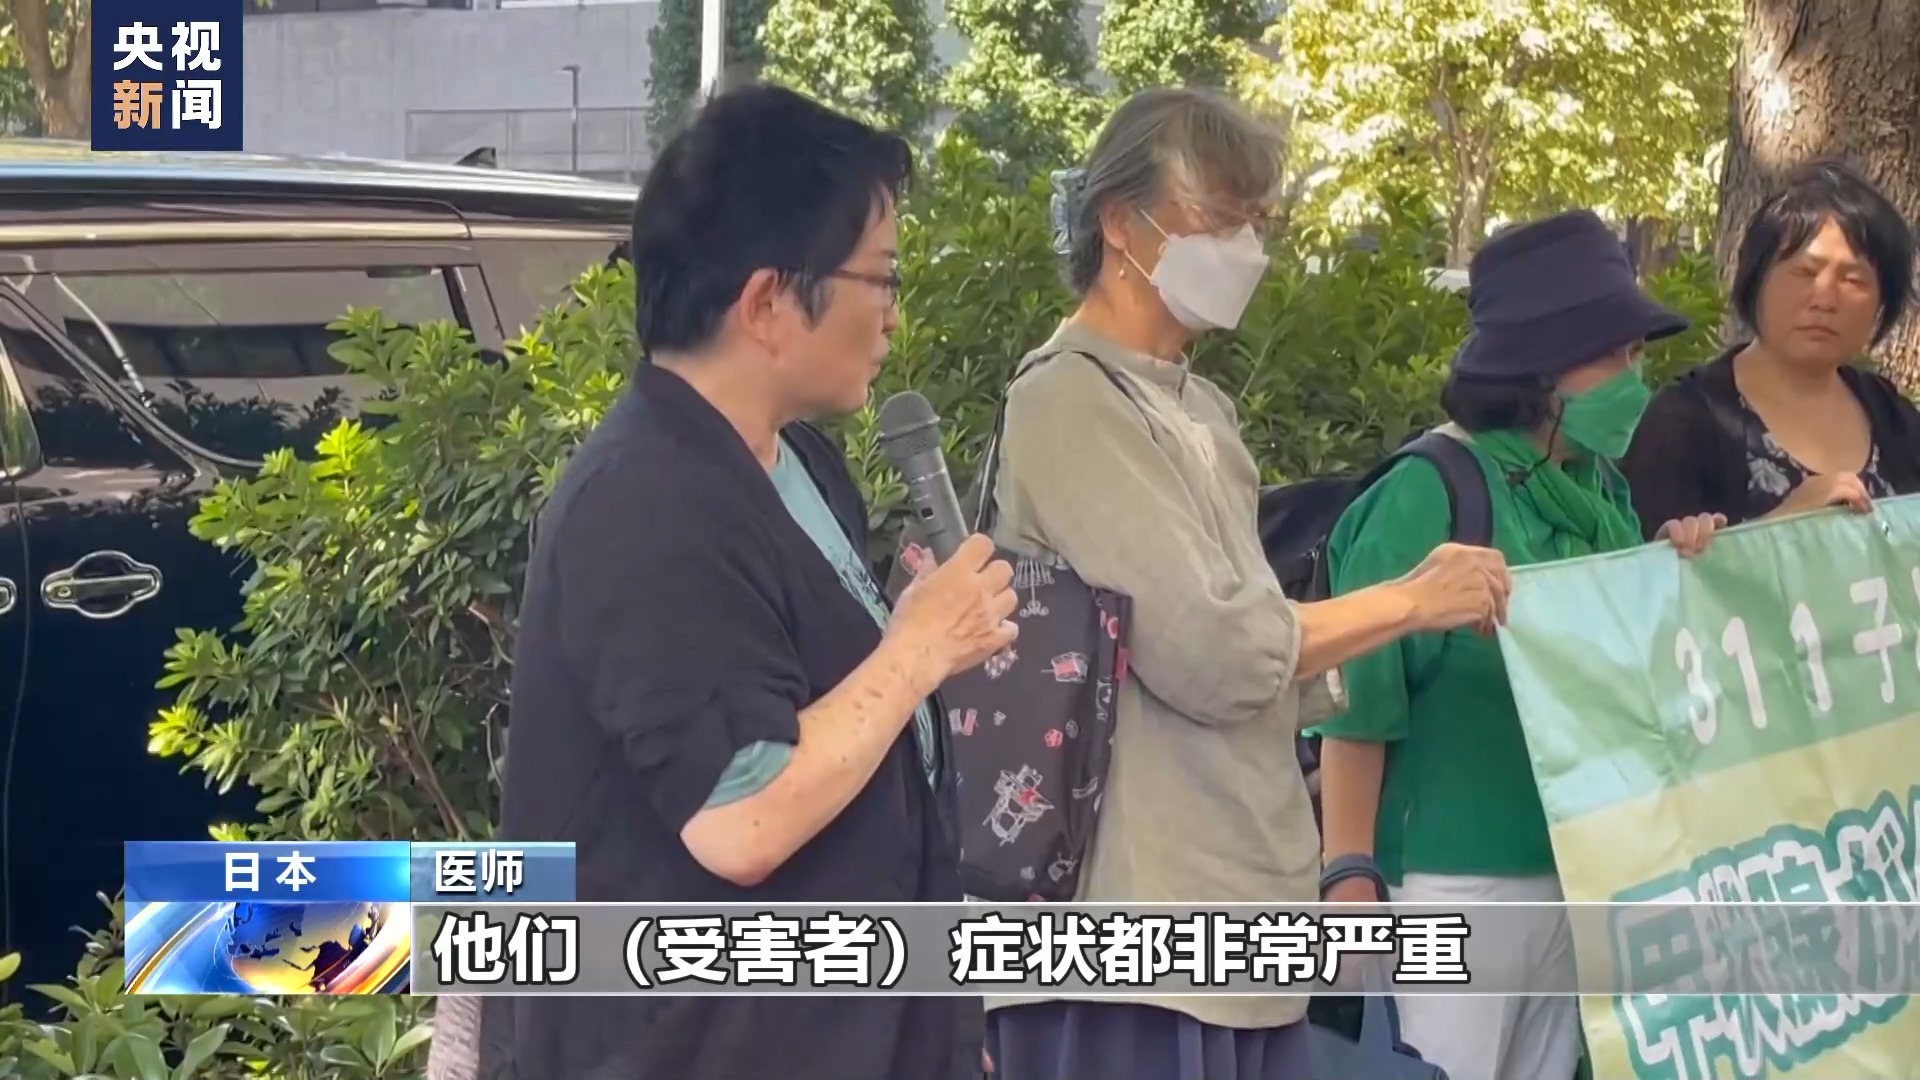 日本福岛县甲状腺癌患者状告东京电力公司 民众集会声援3